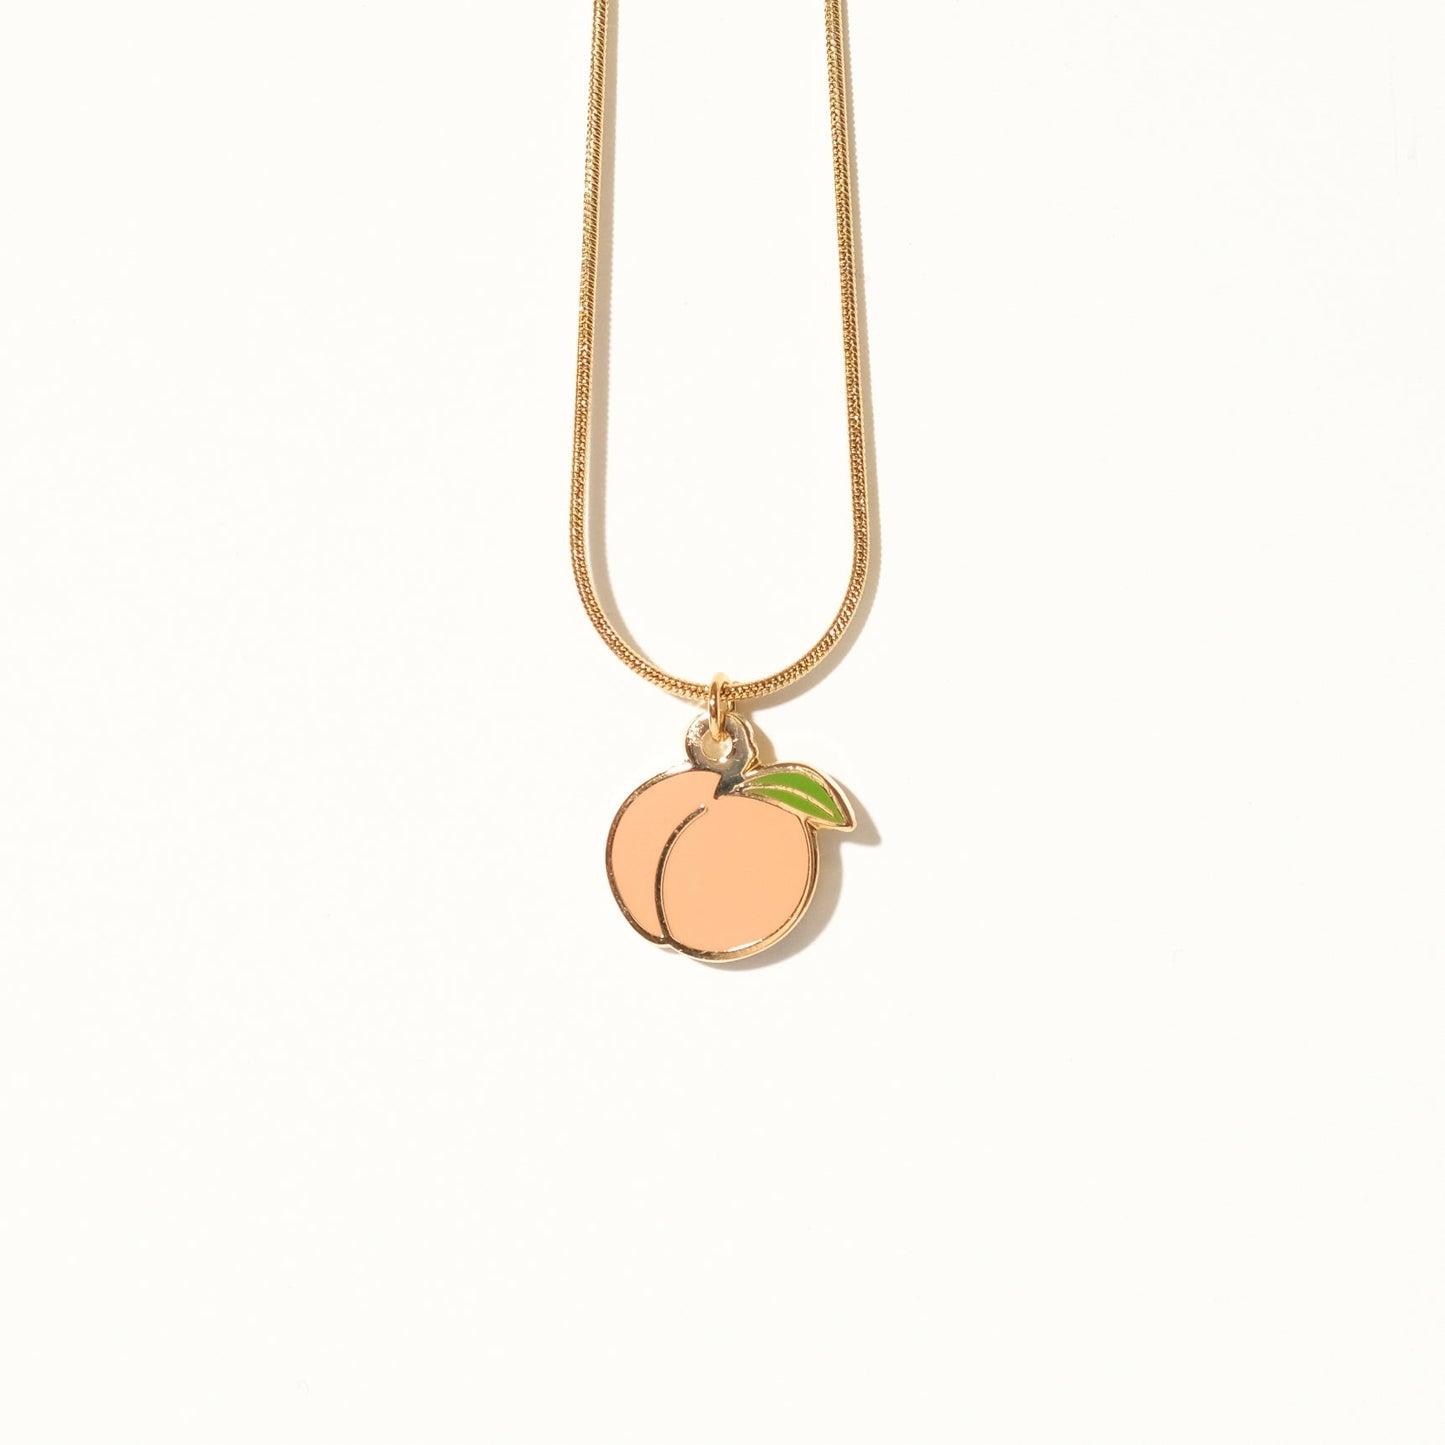 Peach Booty Charm Necklace - Sleepy Mountain